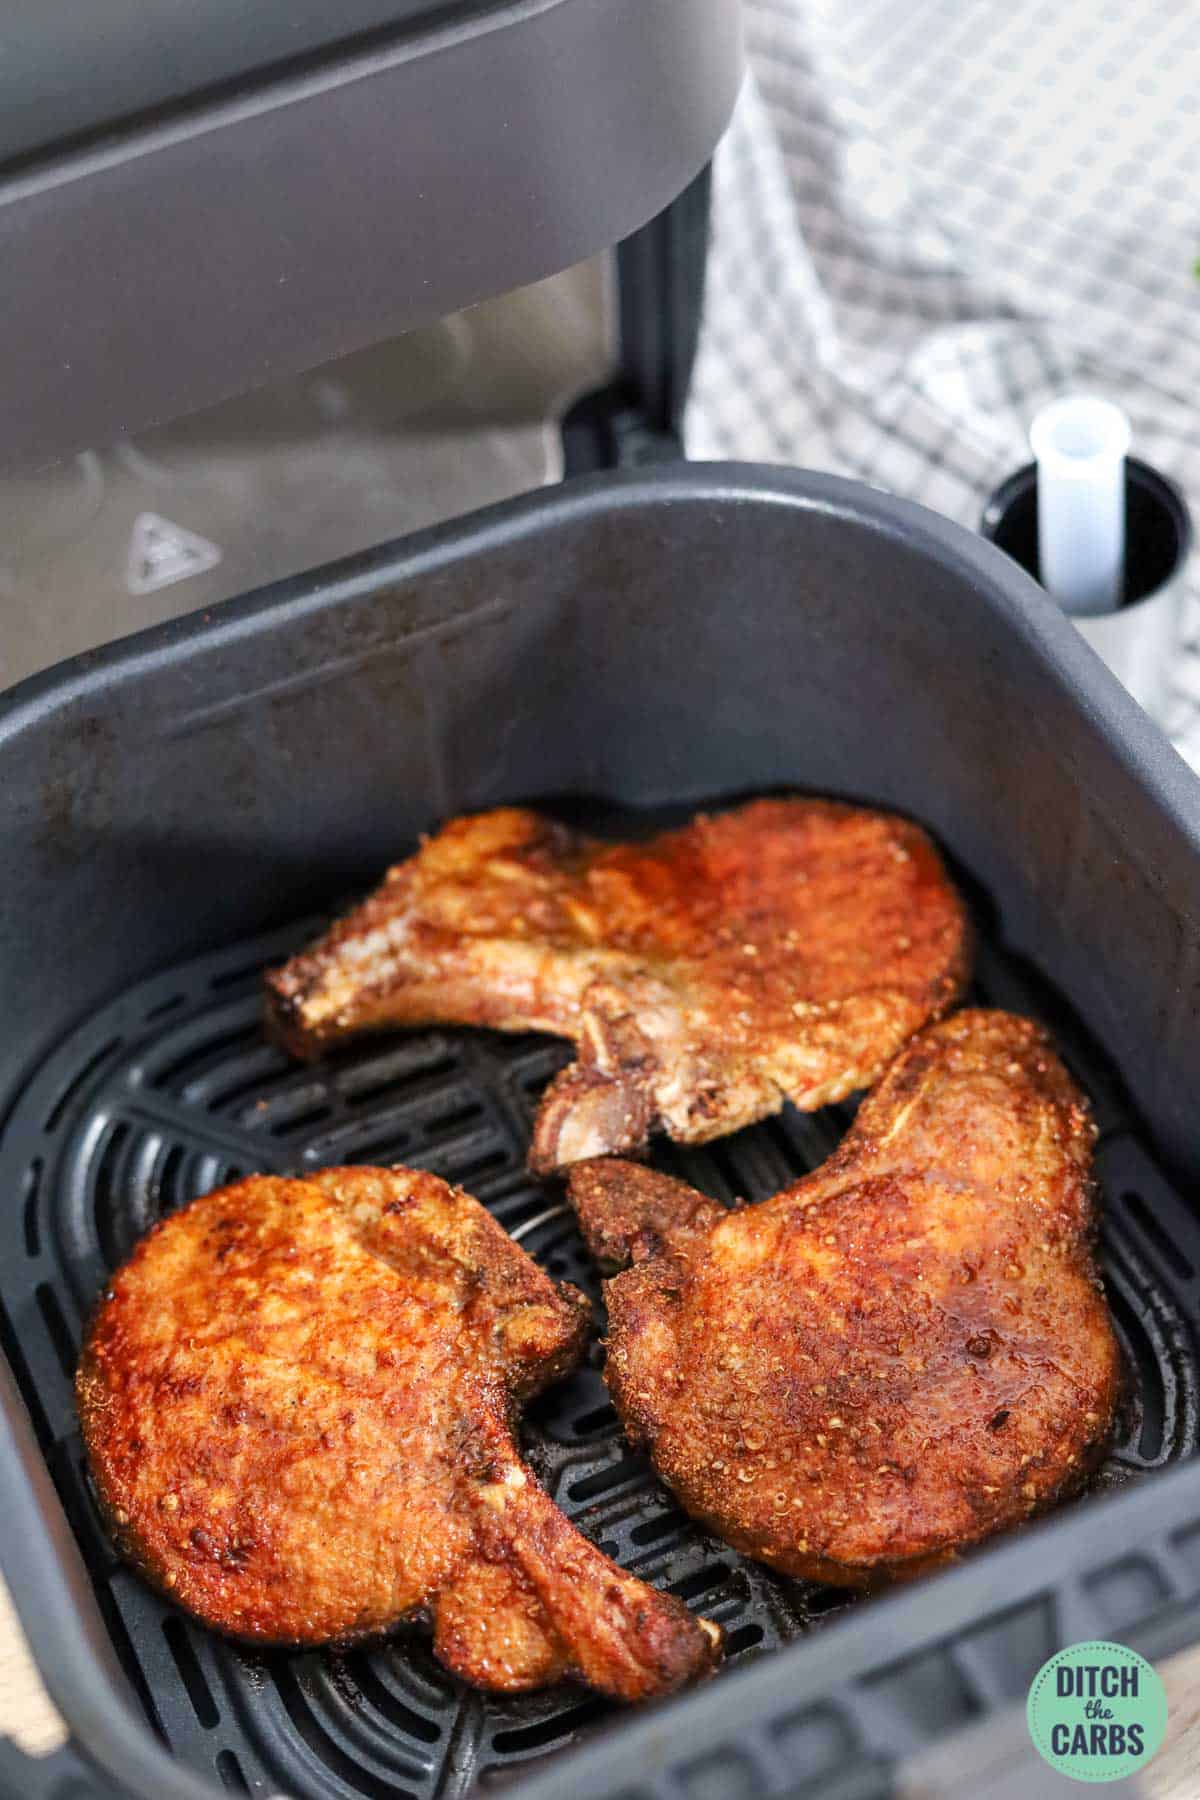 Air fryer basket with bone-in pork chops cooking